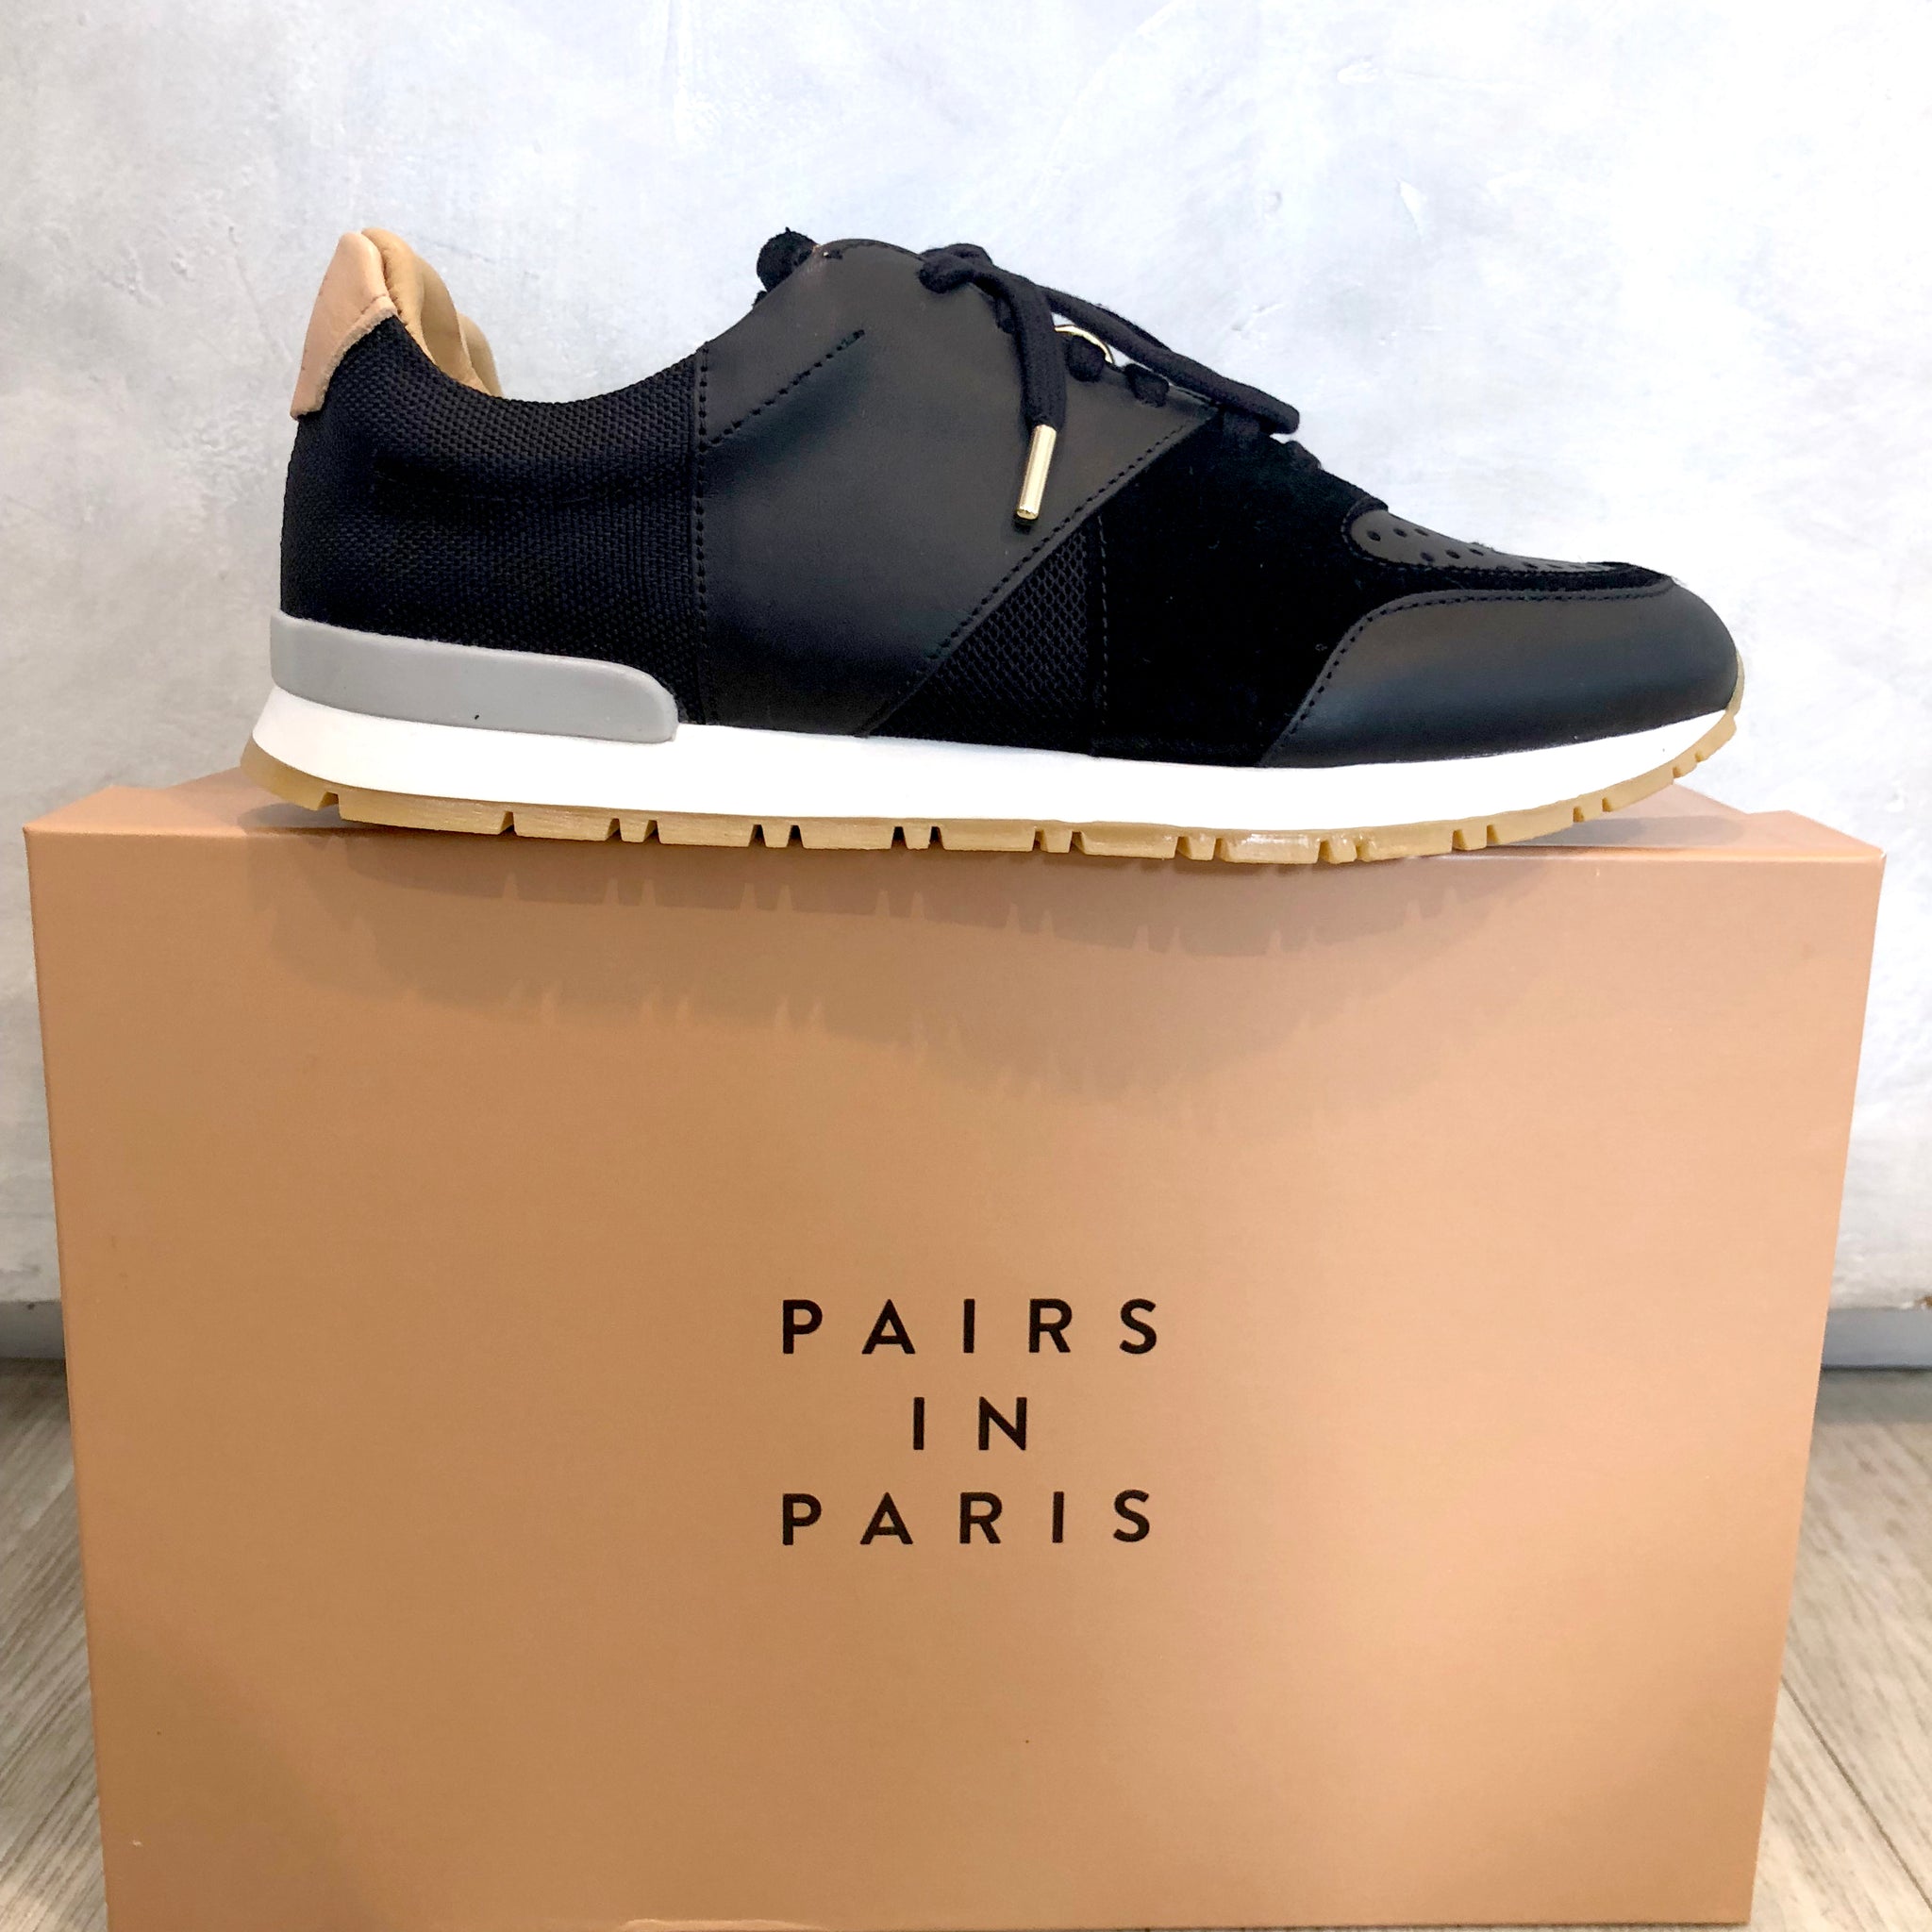 Pairs in Paris Shoes